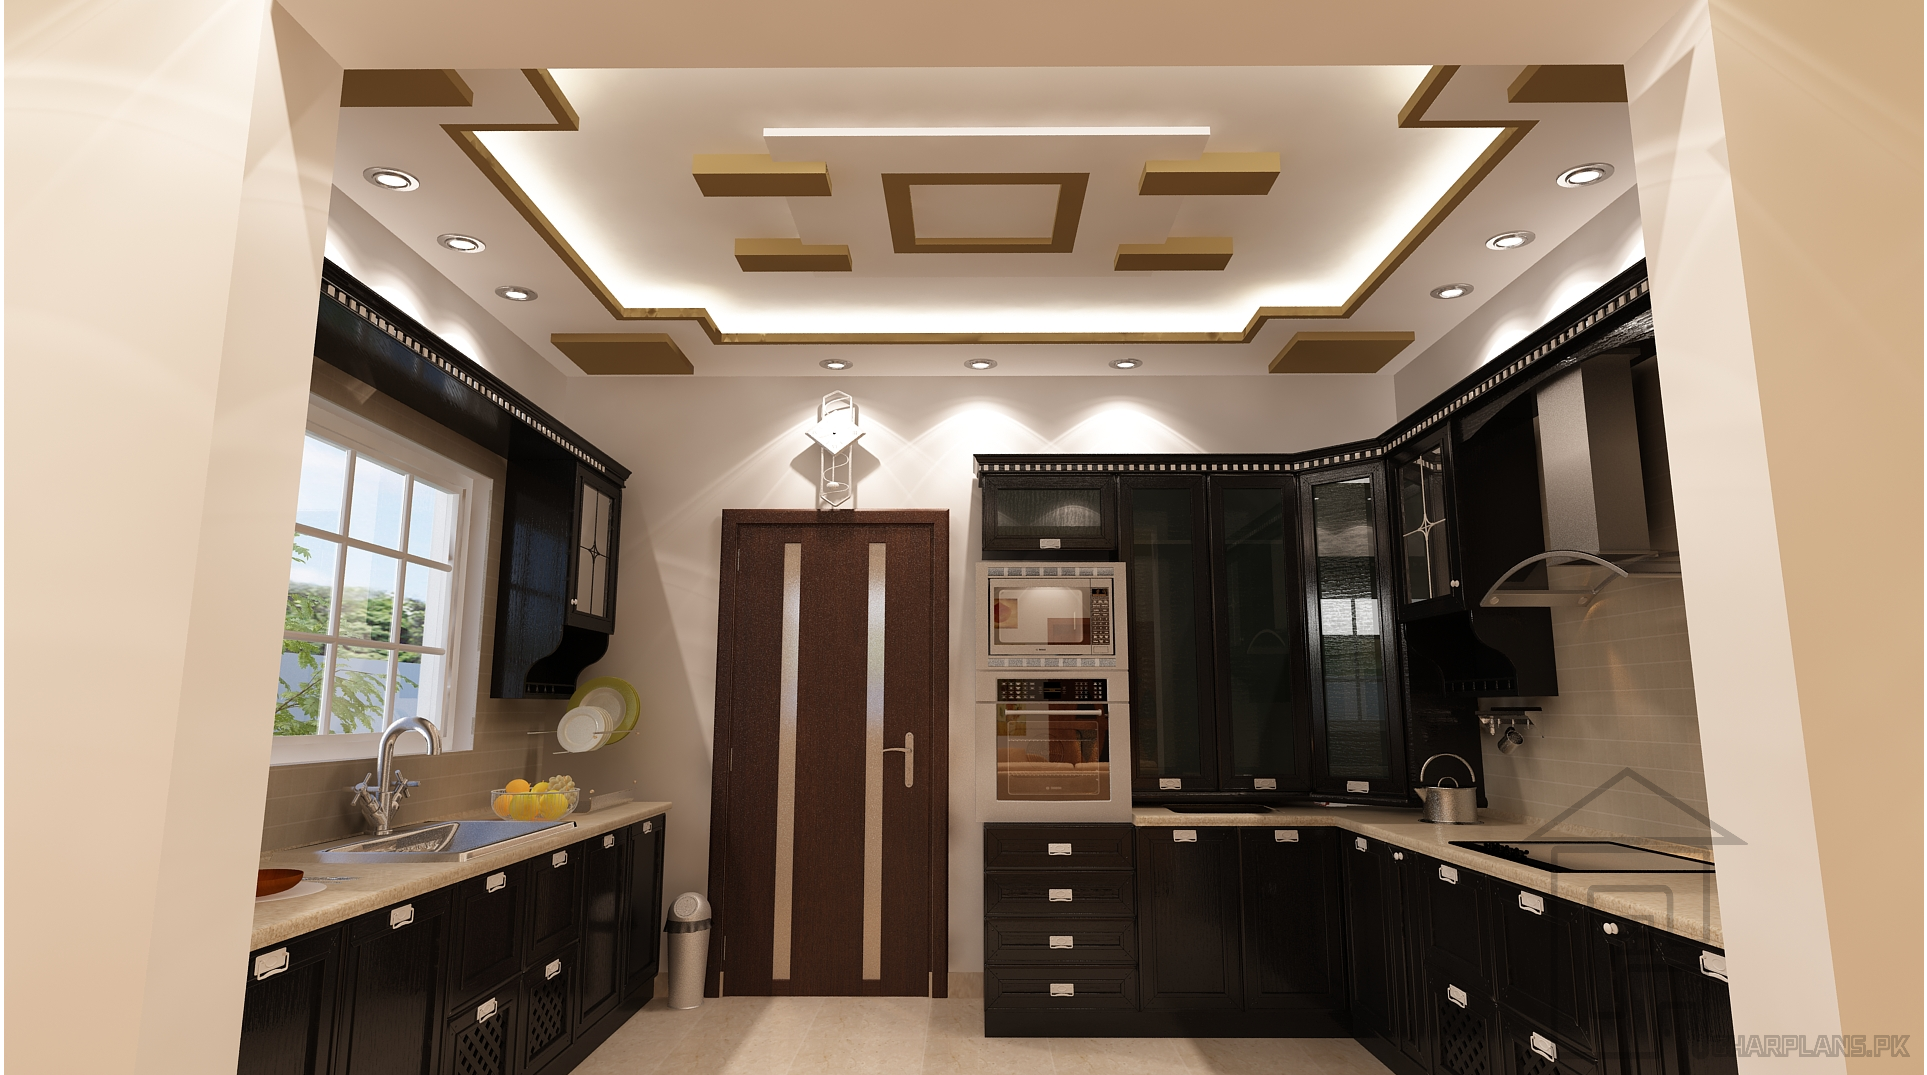 Потолок на кухню из гипсокартона: двухуровневый,фигурный, фото в интерьере